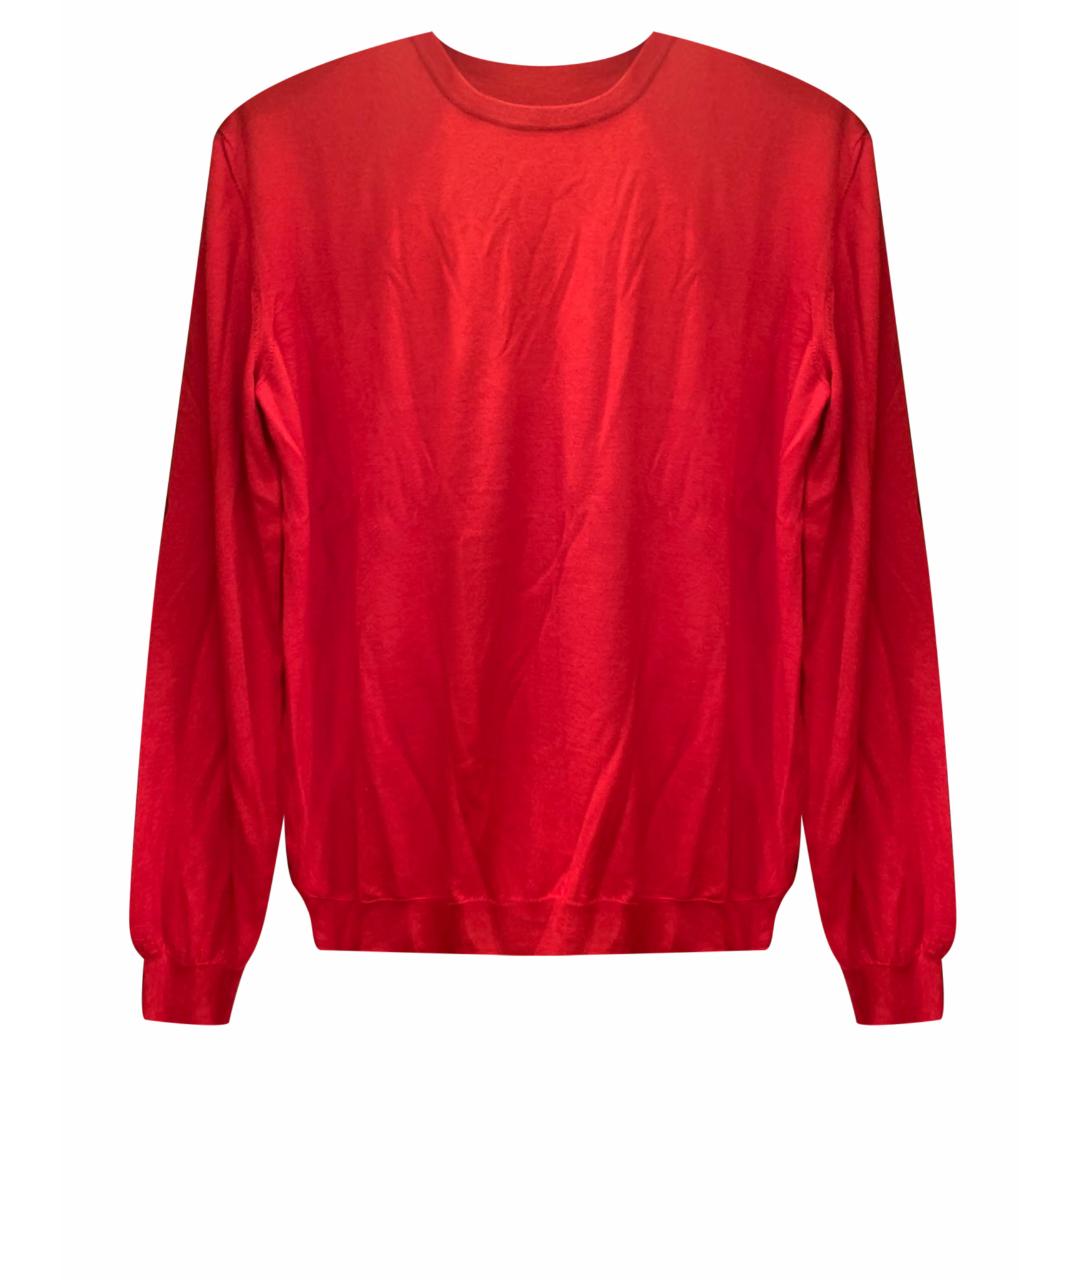 FERU Красный кашемировый джемпер / свитер, фото 1